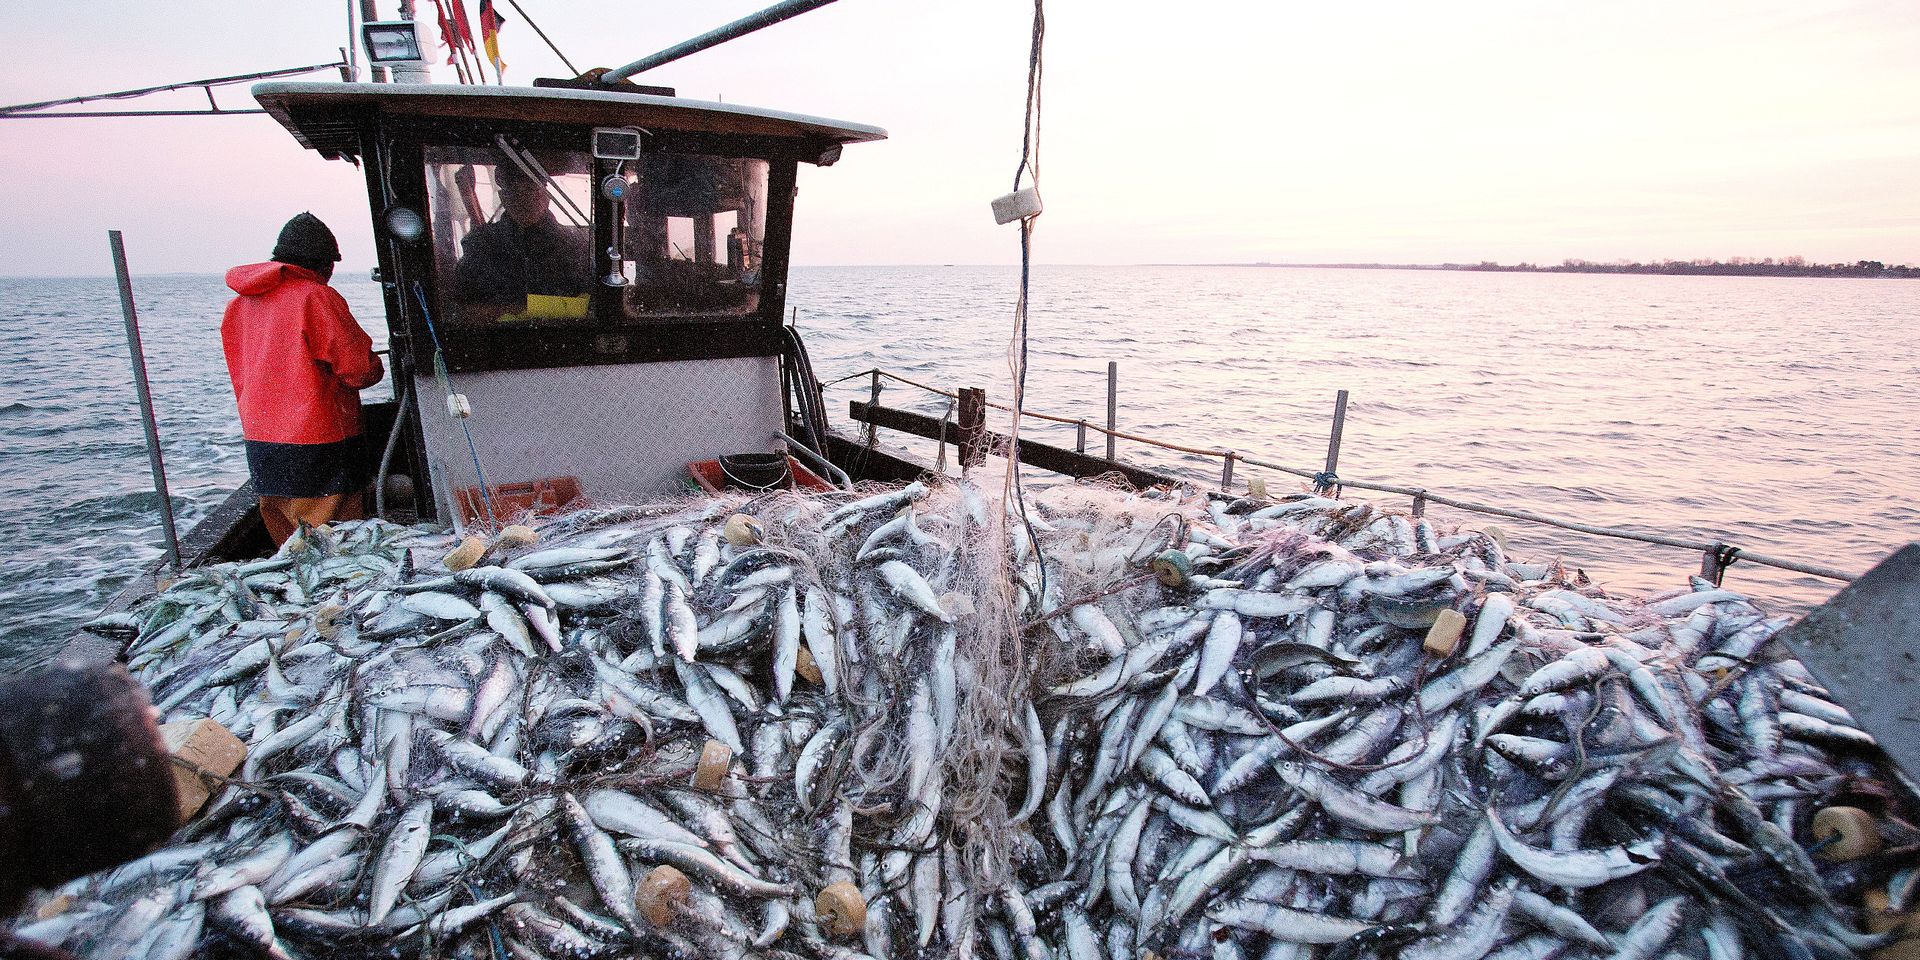 Covid-19 : Chute de 6,5% des activités de pêche à l'échelle mondiale